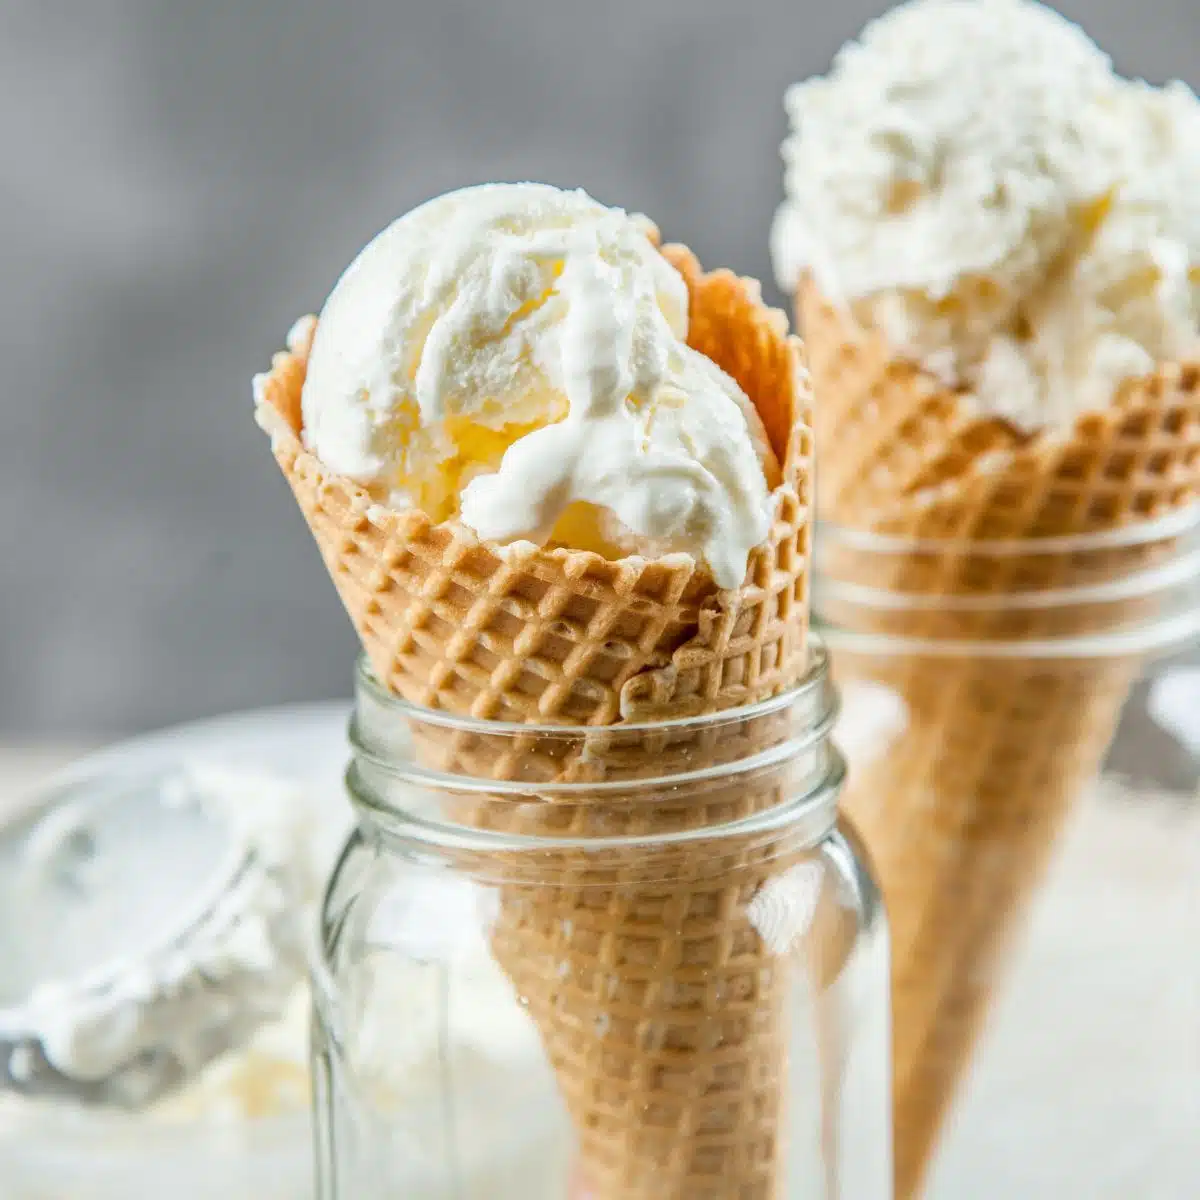 Imagen cuadrada de helado de vainilla sin batir en un cono de helado.